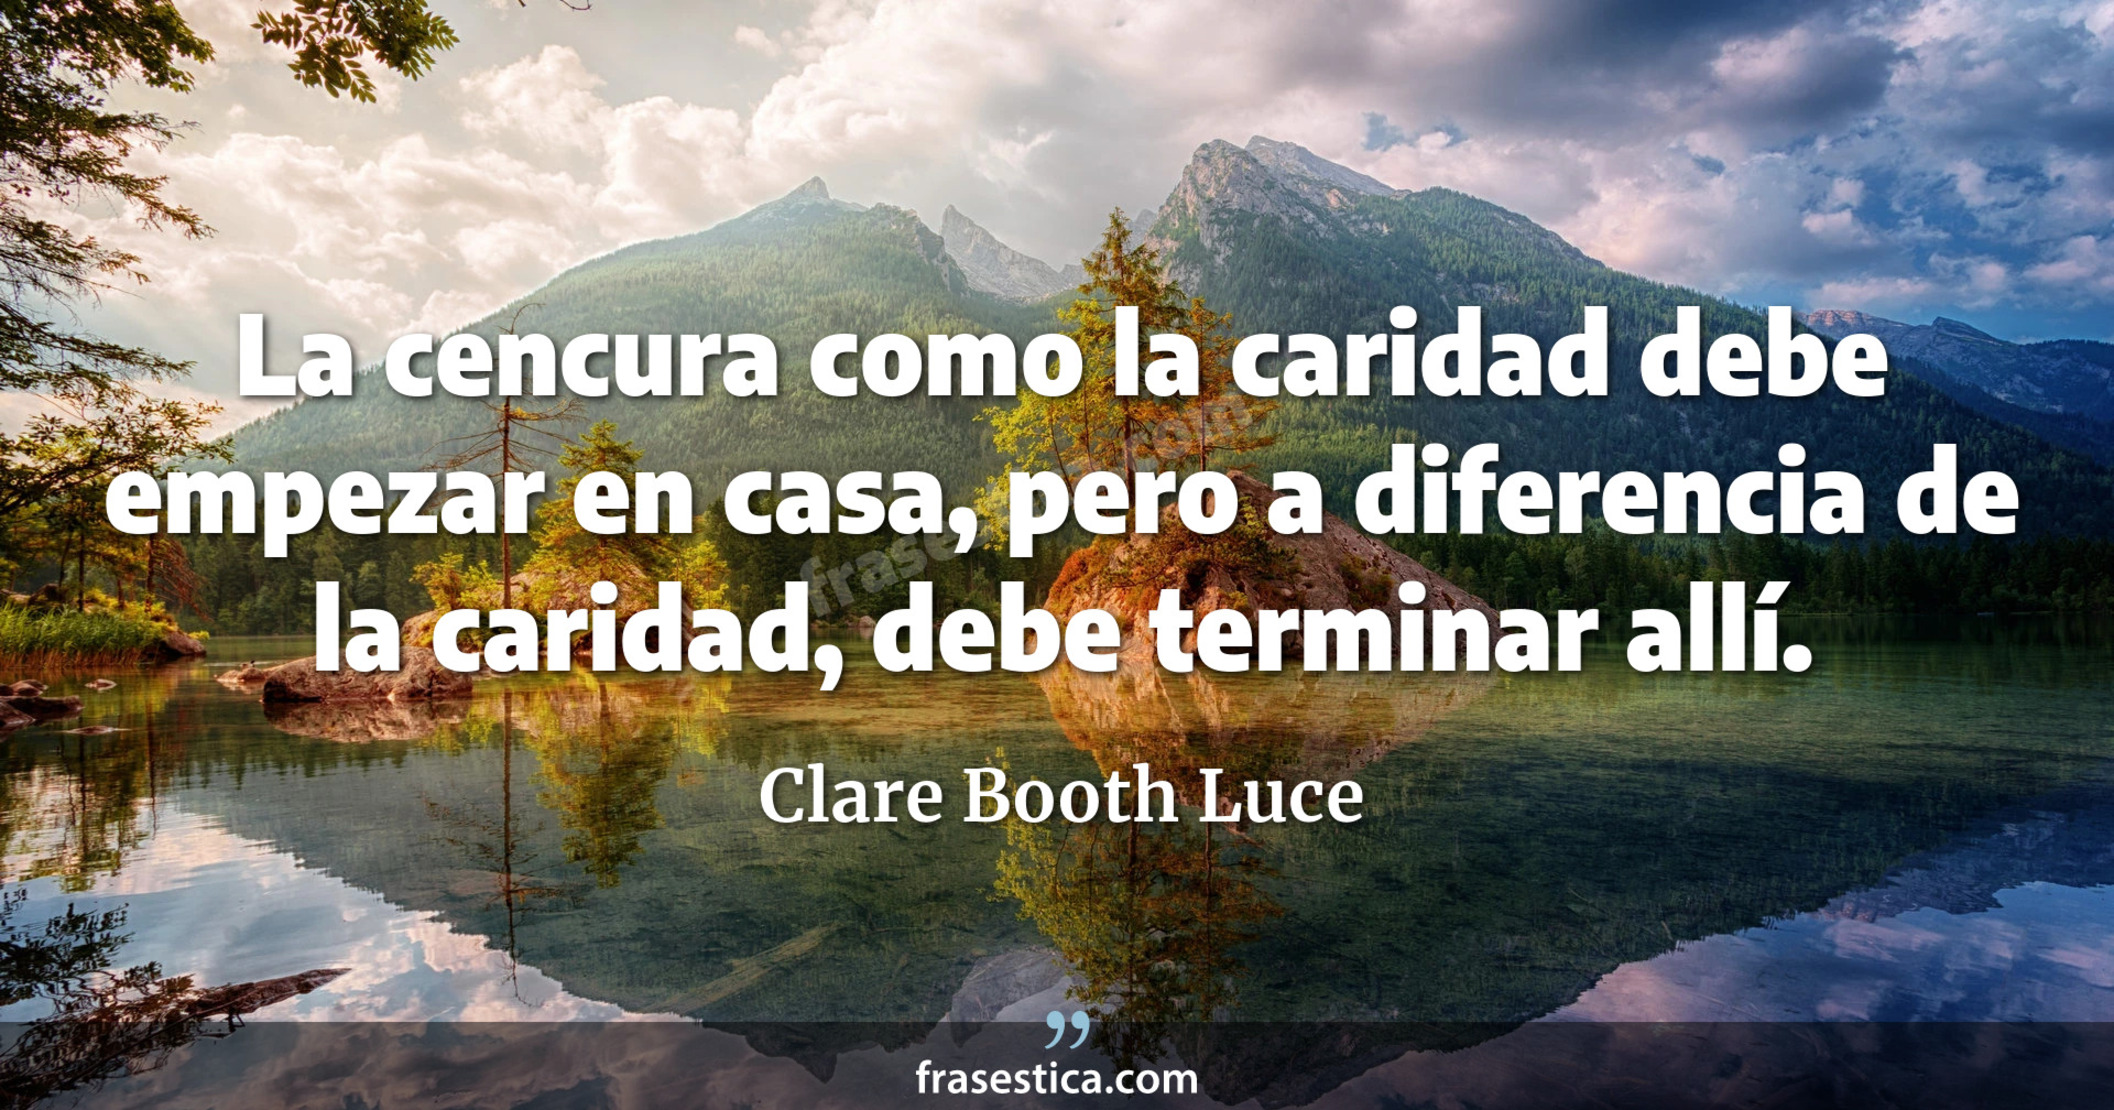 La cencura como la caridad debe empezar en casa, pero a diferencia de la caridad, debe terminar allí. - Clare Booth Luce